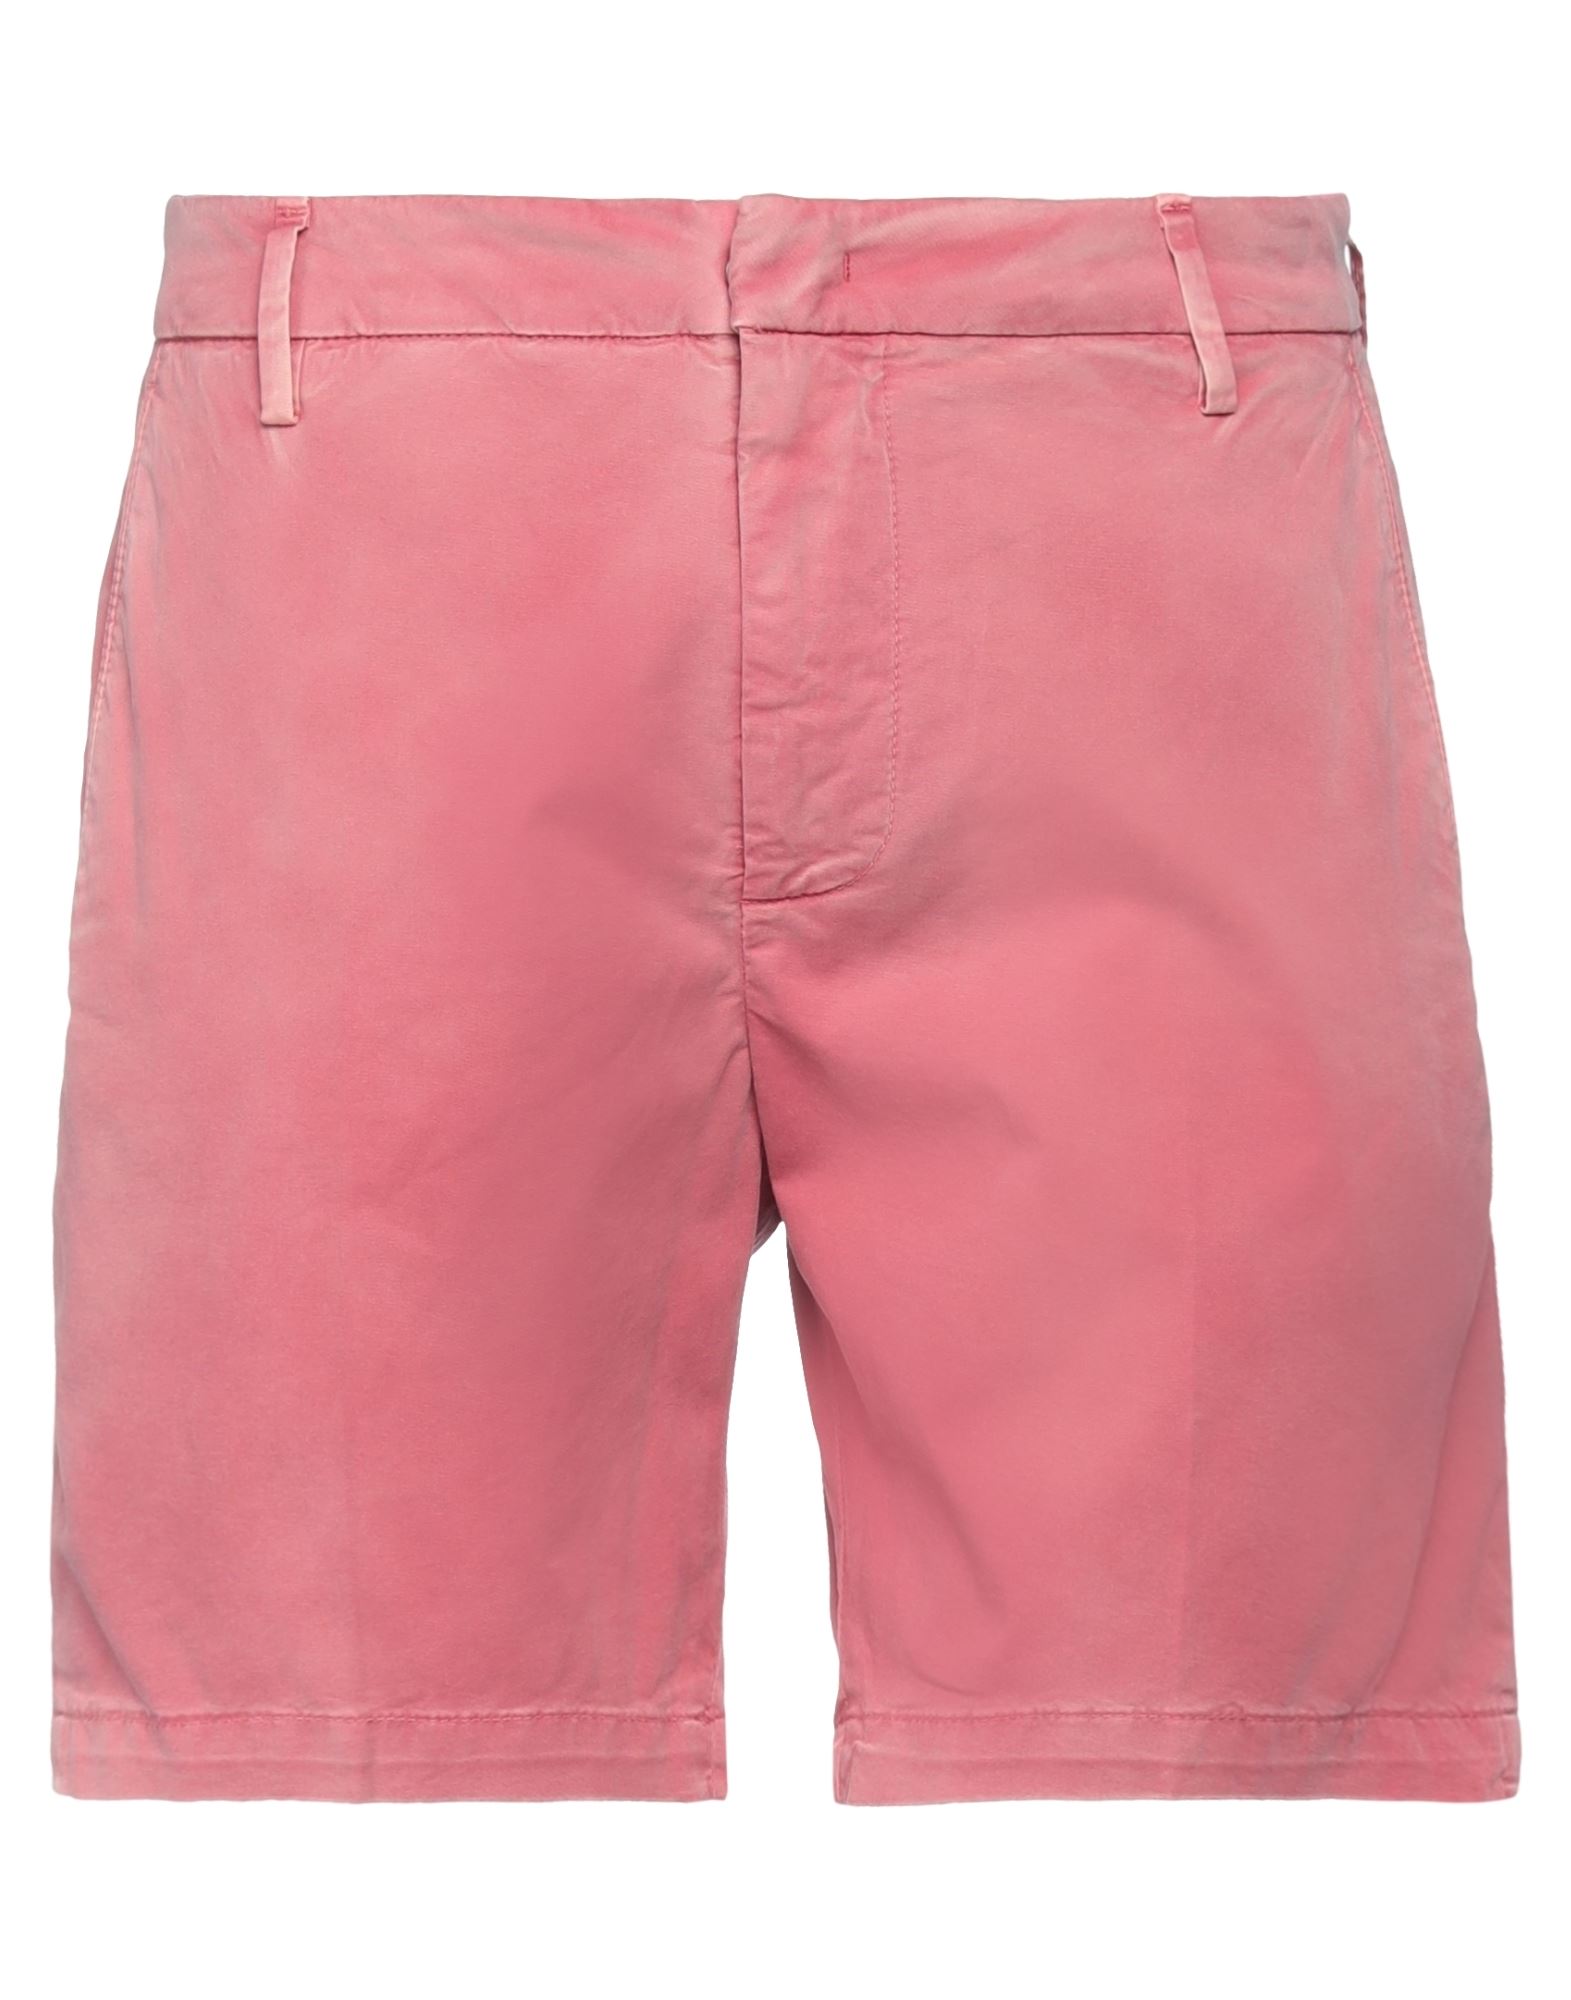 Dondup Man Shorts & Bermuda Shorts Pastel Pink Size 29 Cotton, Elastane